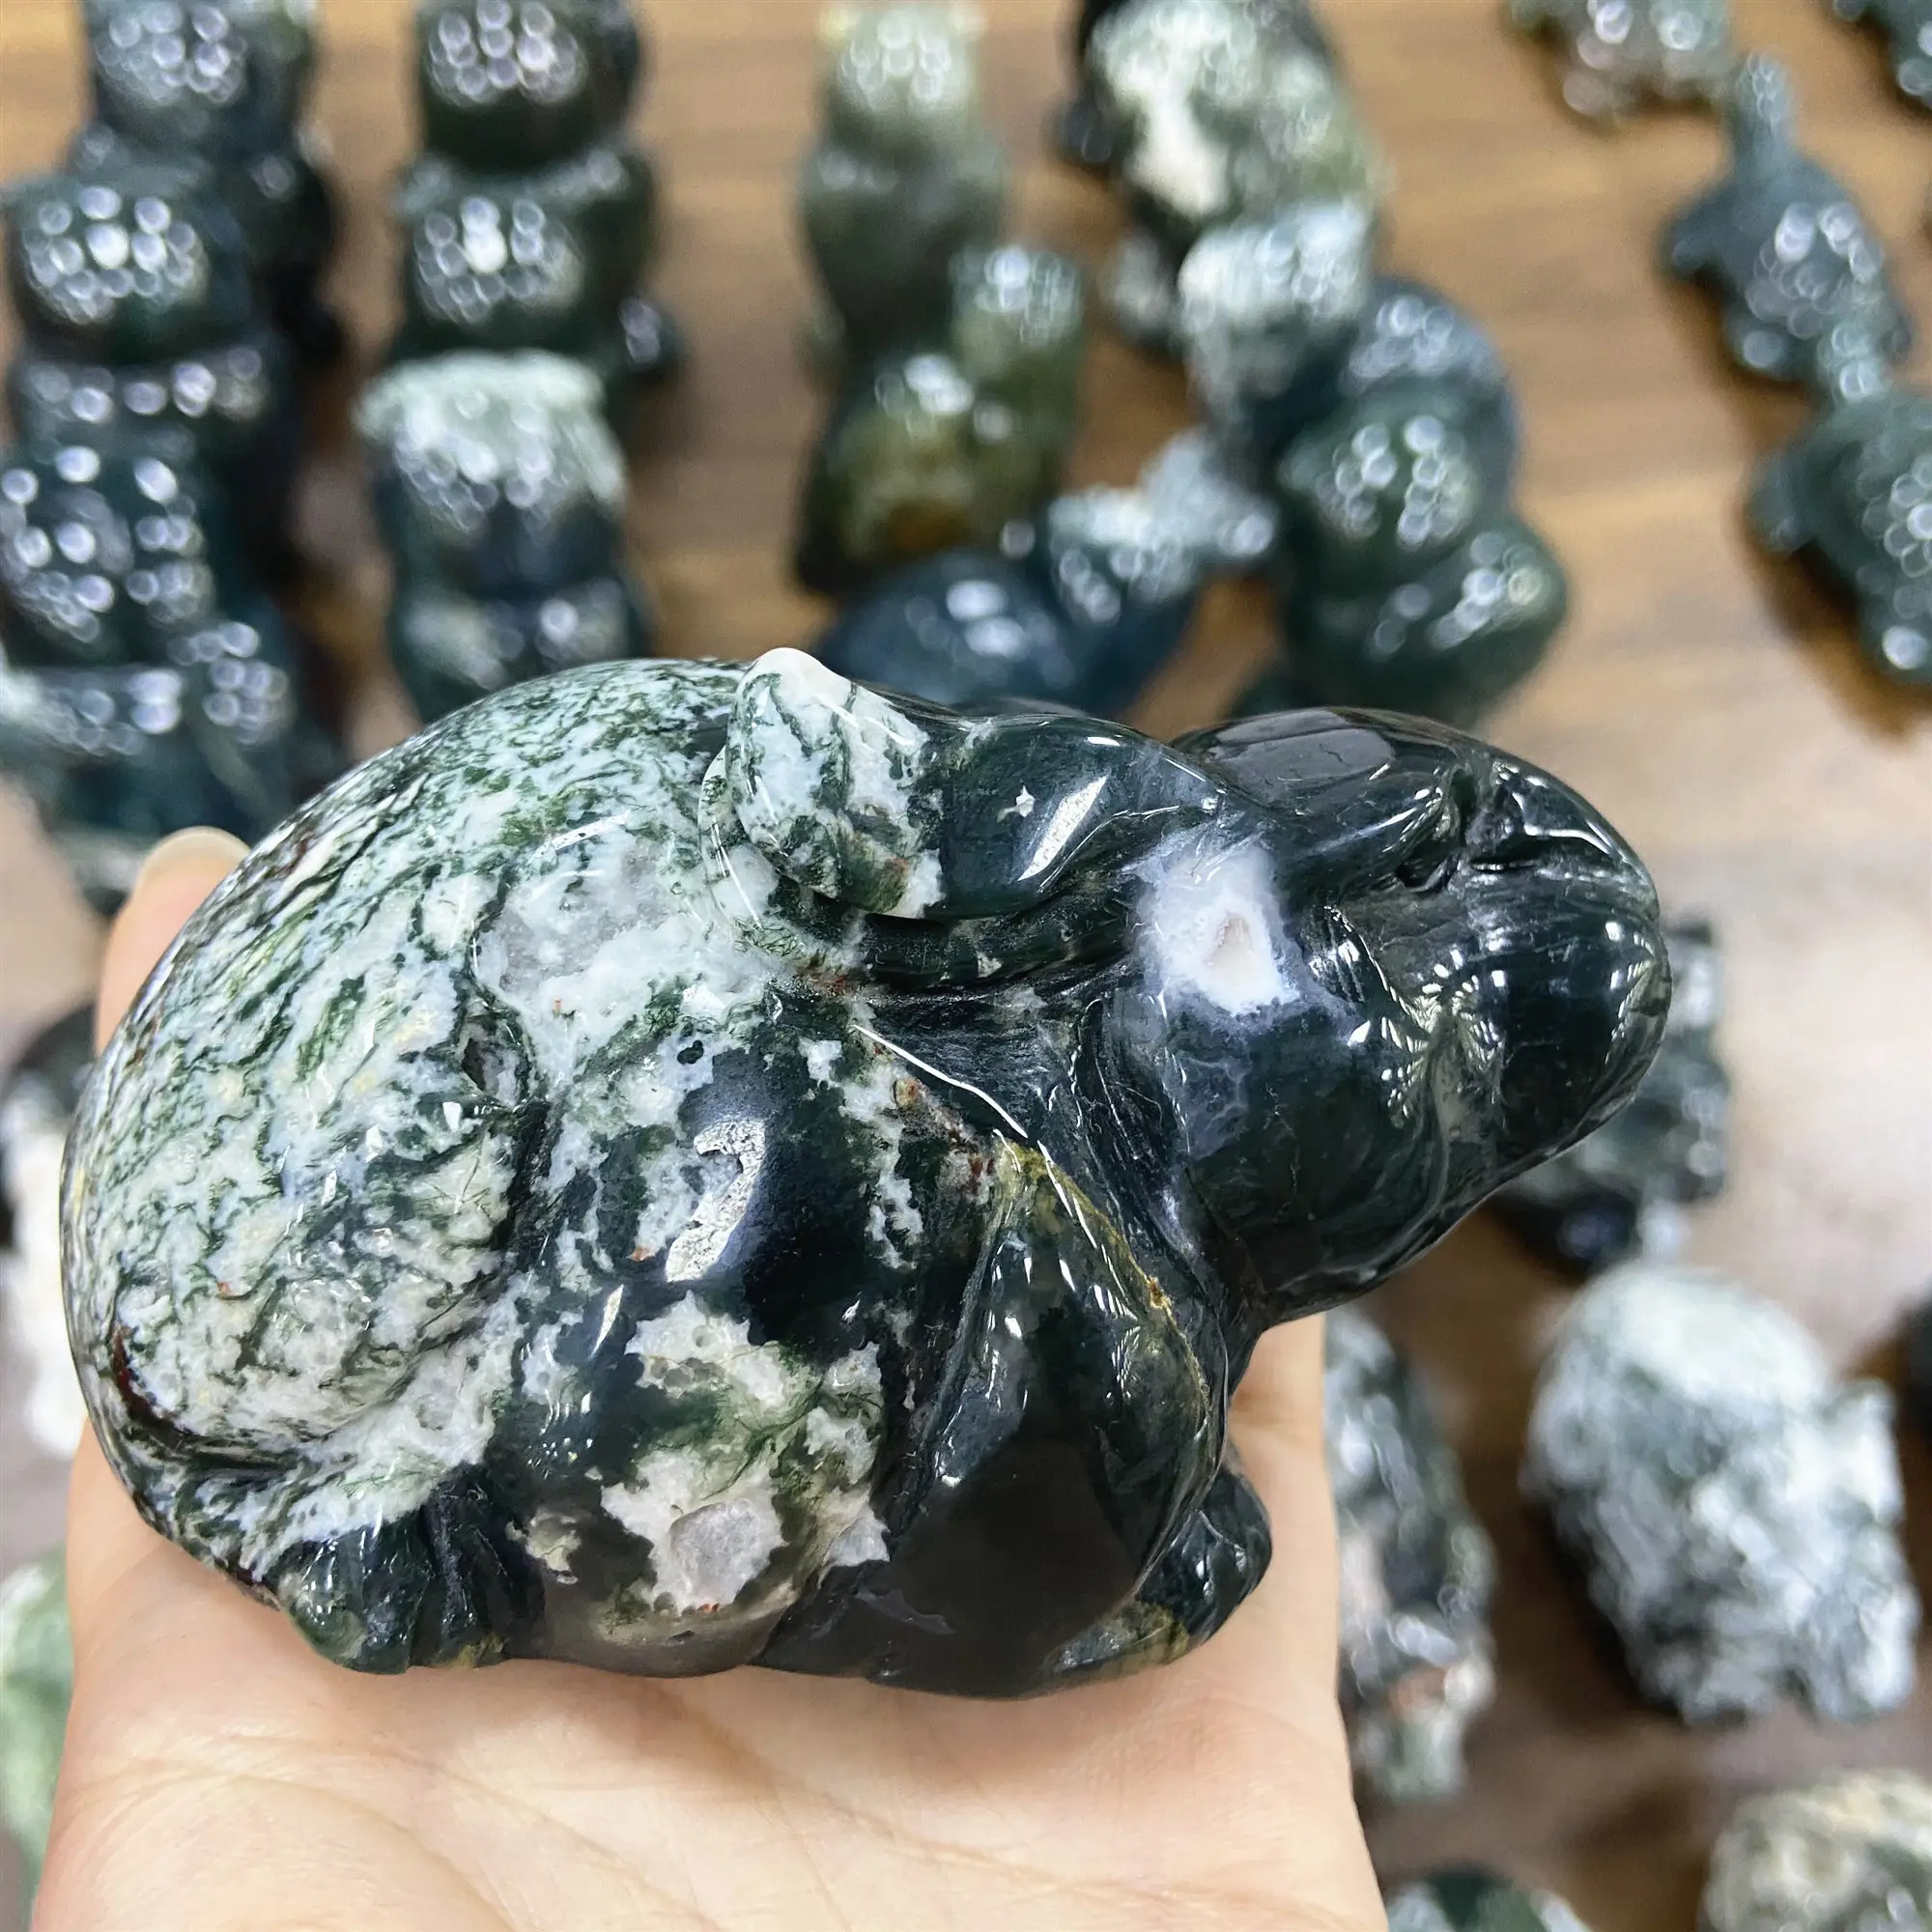 Venta caliente al por mayor de piedras preciosas naturales de cristal de curación piedras de ágata de musgo conejo